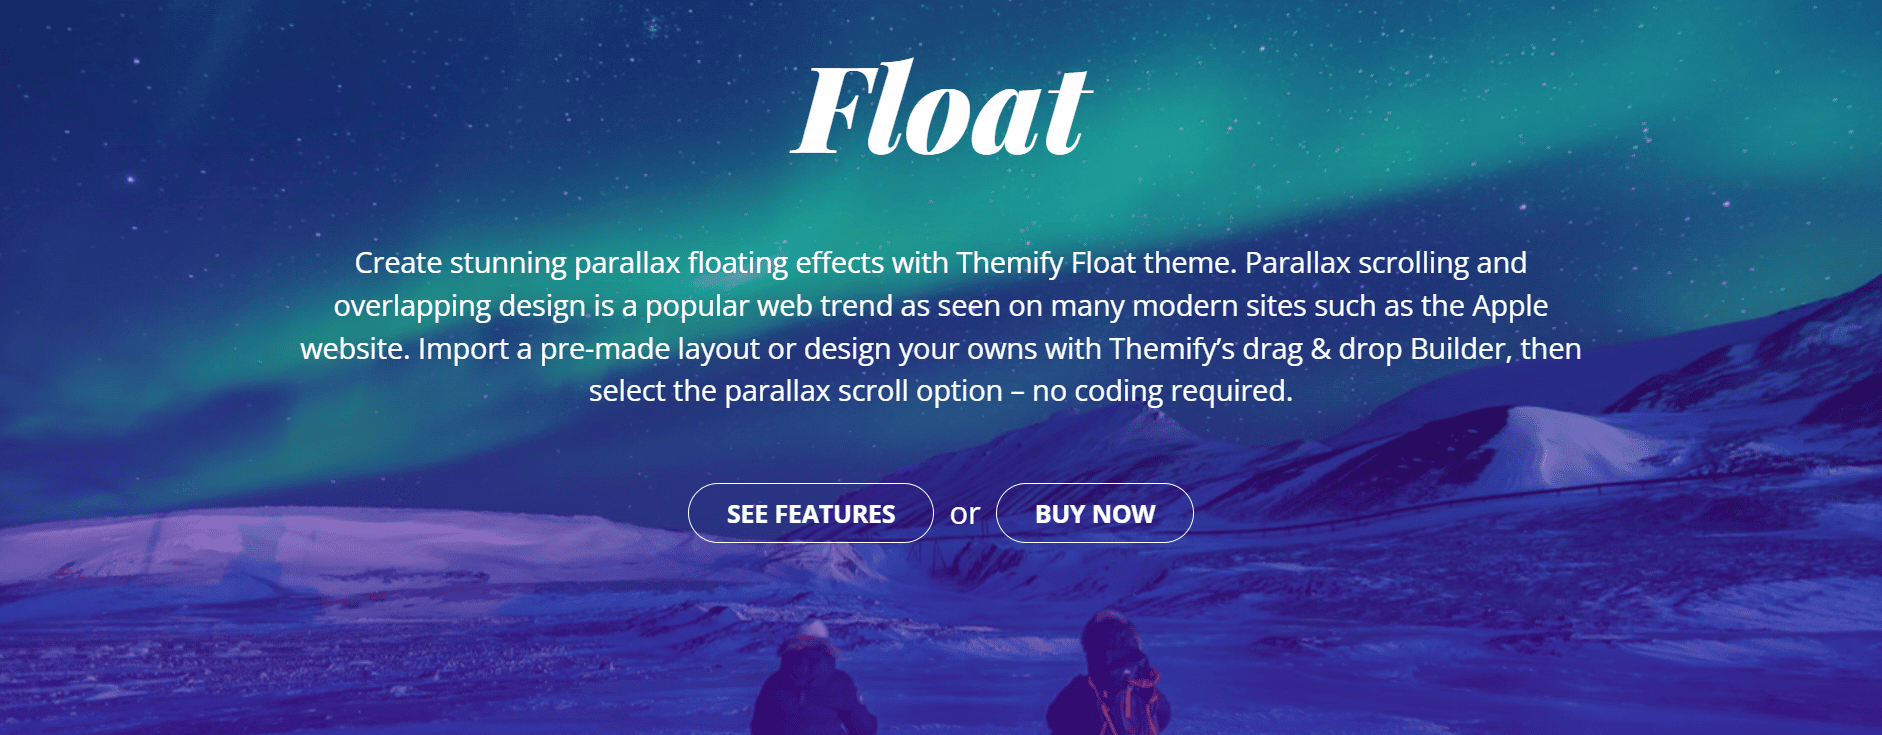 Screenshot van de website voor het Float WordPress thema voor affiliates.